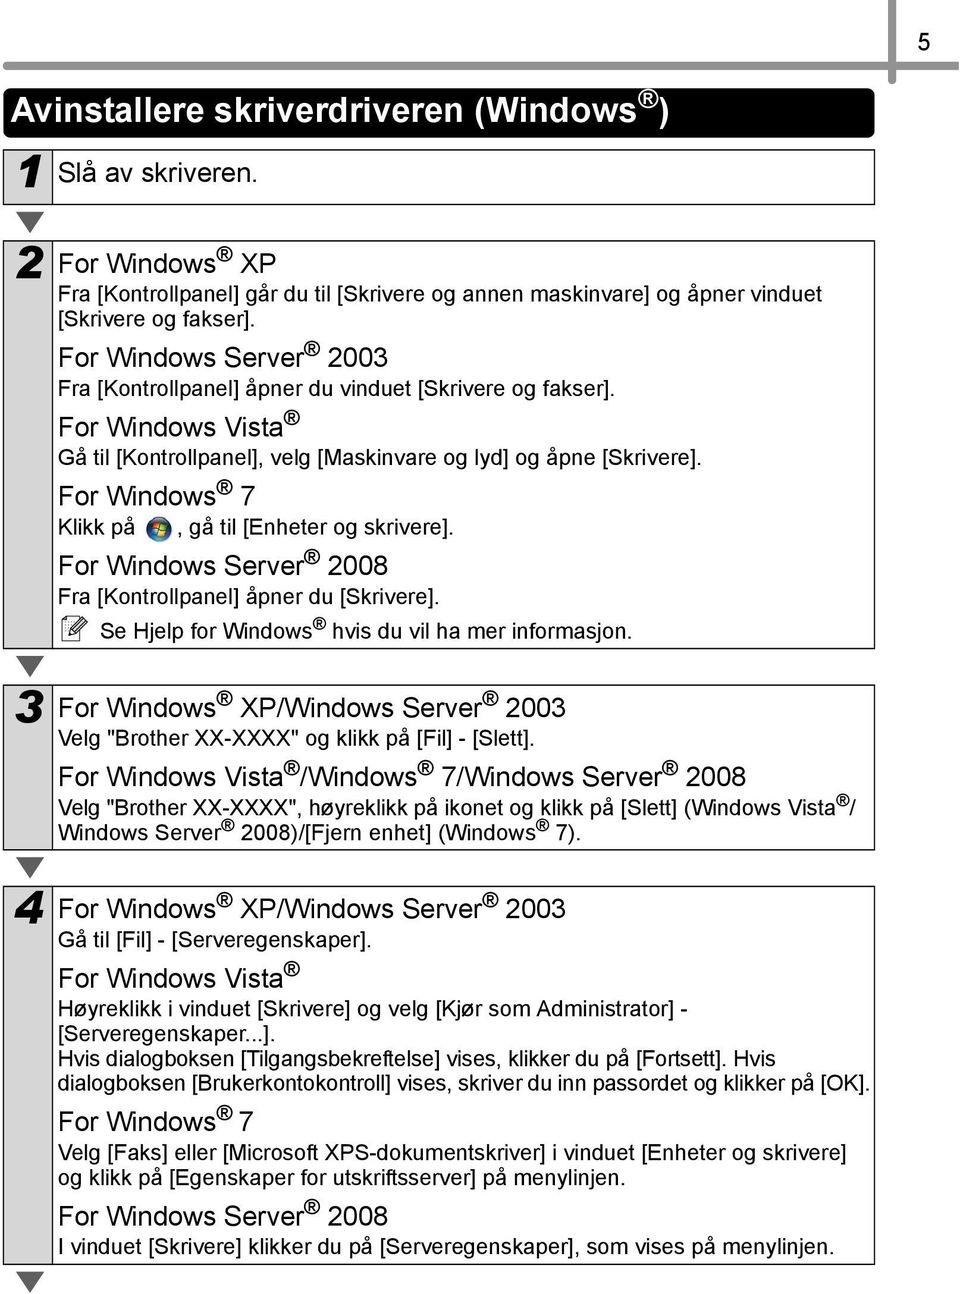 For Windows 7 Klikk på, gå til [Enheter og skrivere]. For Windows Server 2008 Fra [Kontrollpanel] åpner du [Skrivere]. Se Hjelp for Windows hvis du vil ha mer informasjon.